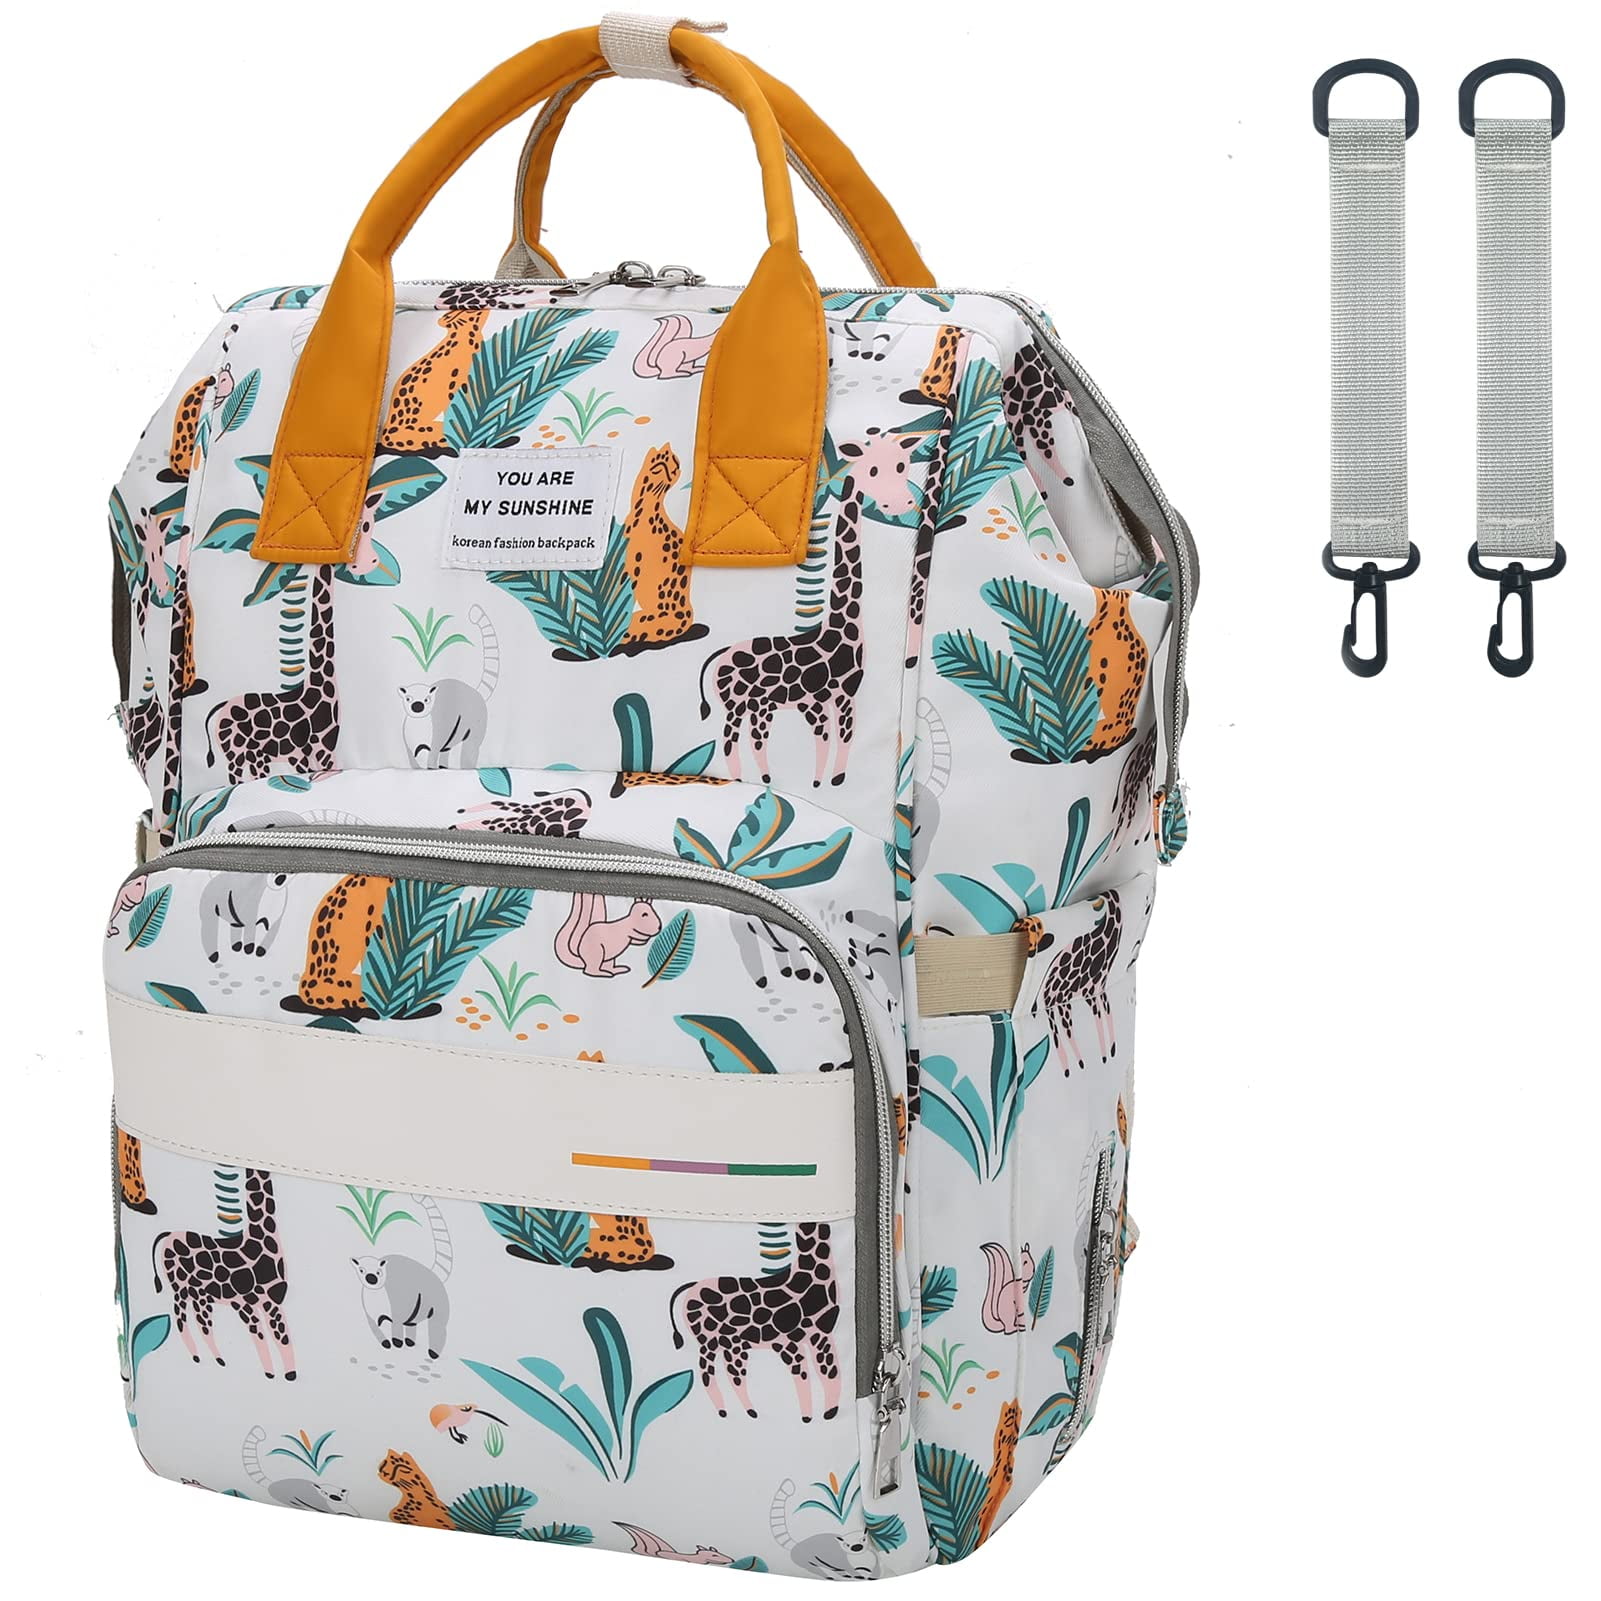 Artiflr Diaper Bag Backpack for Baby Shower Gift Multifunction Changing Bag  Travel Bag with Stroller Strap for Moms Dads 